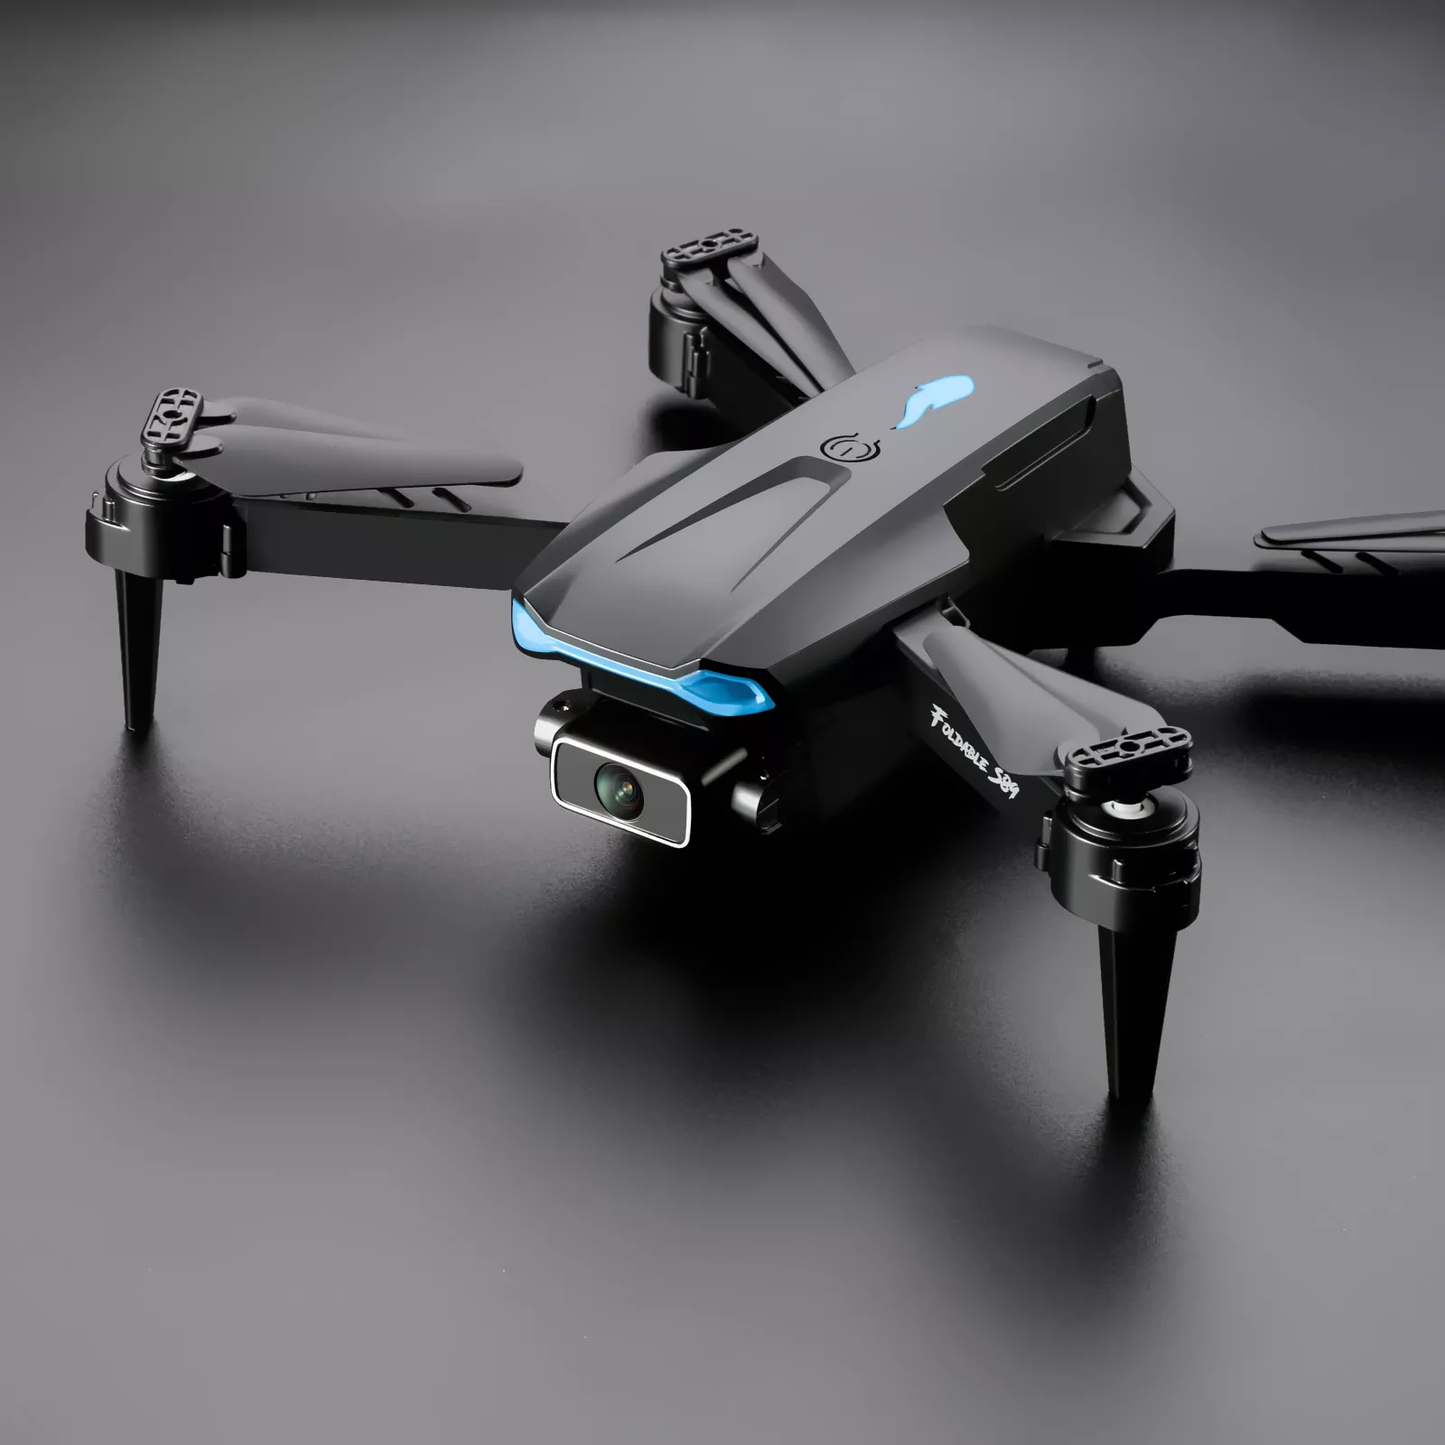 Zumo Drone S89 - 4K HD Drone